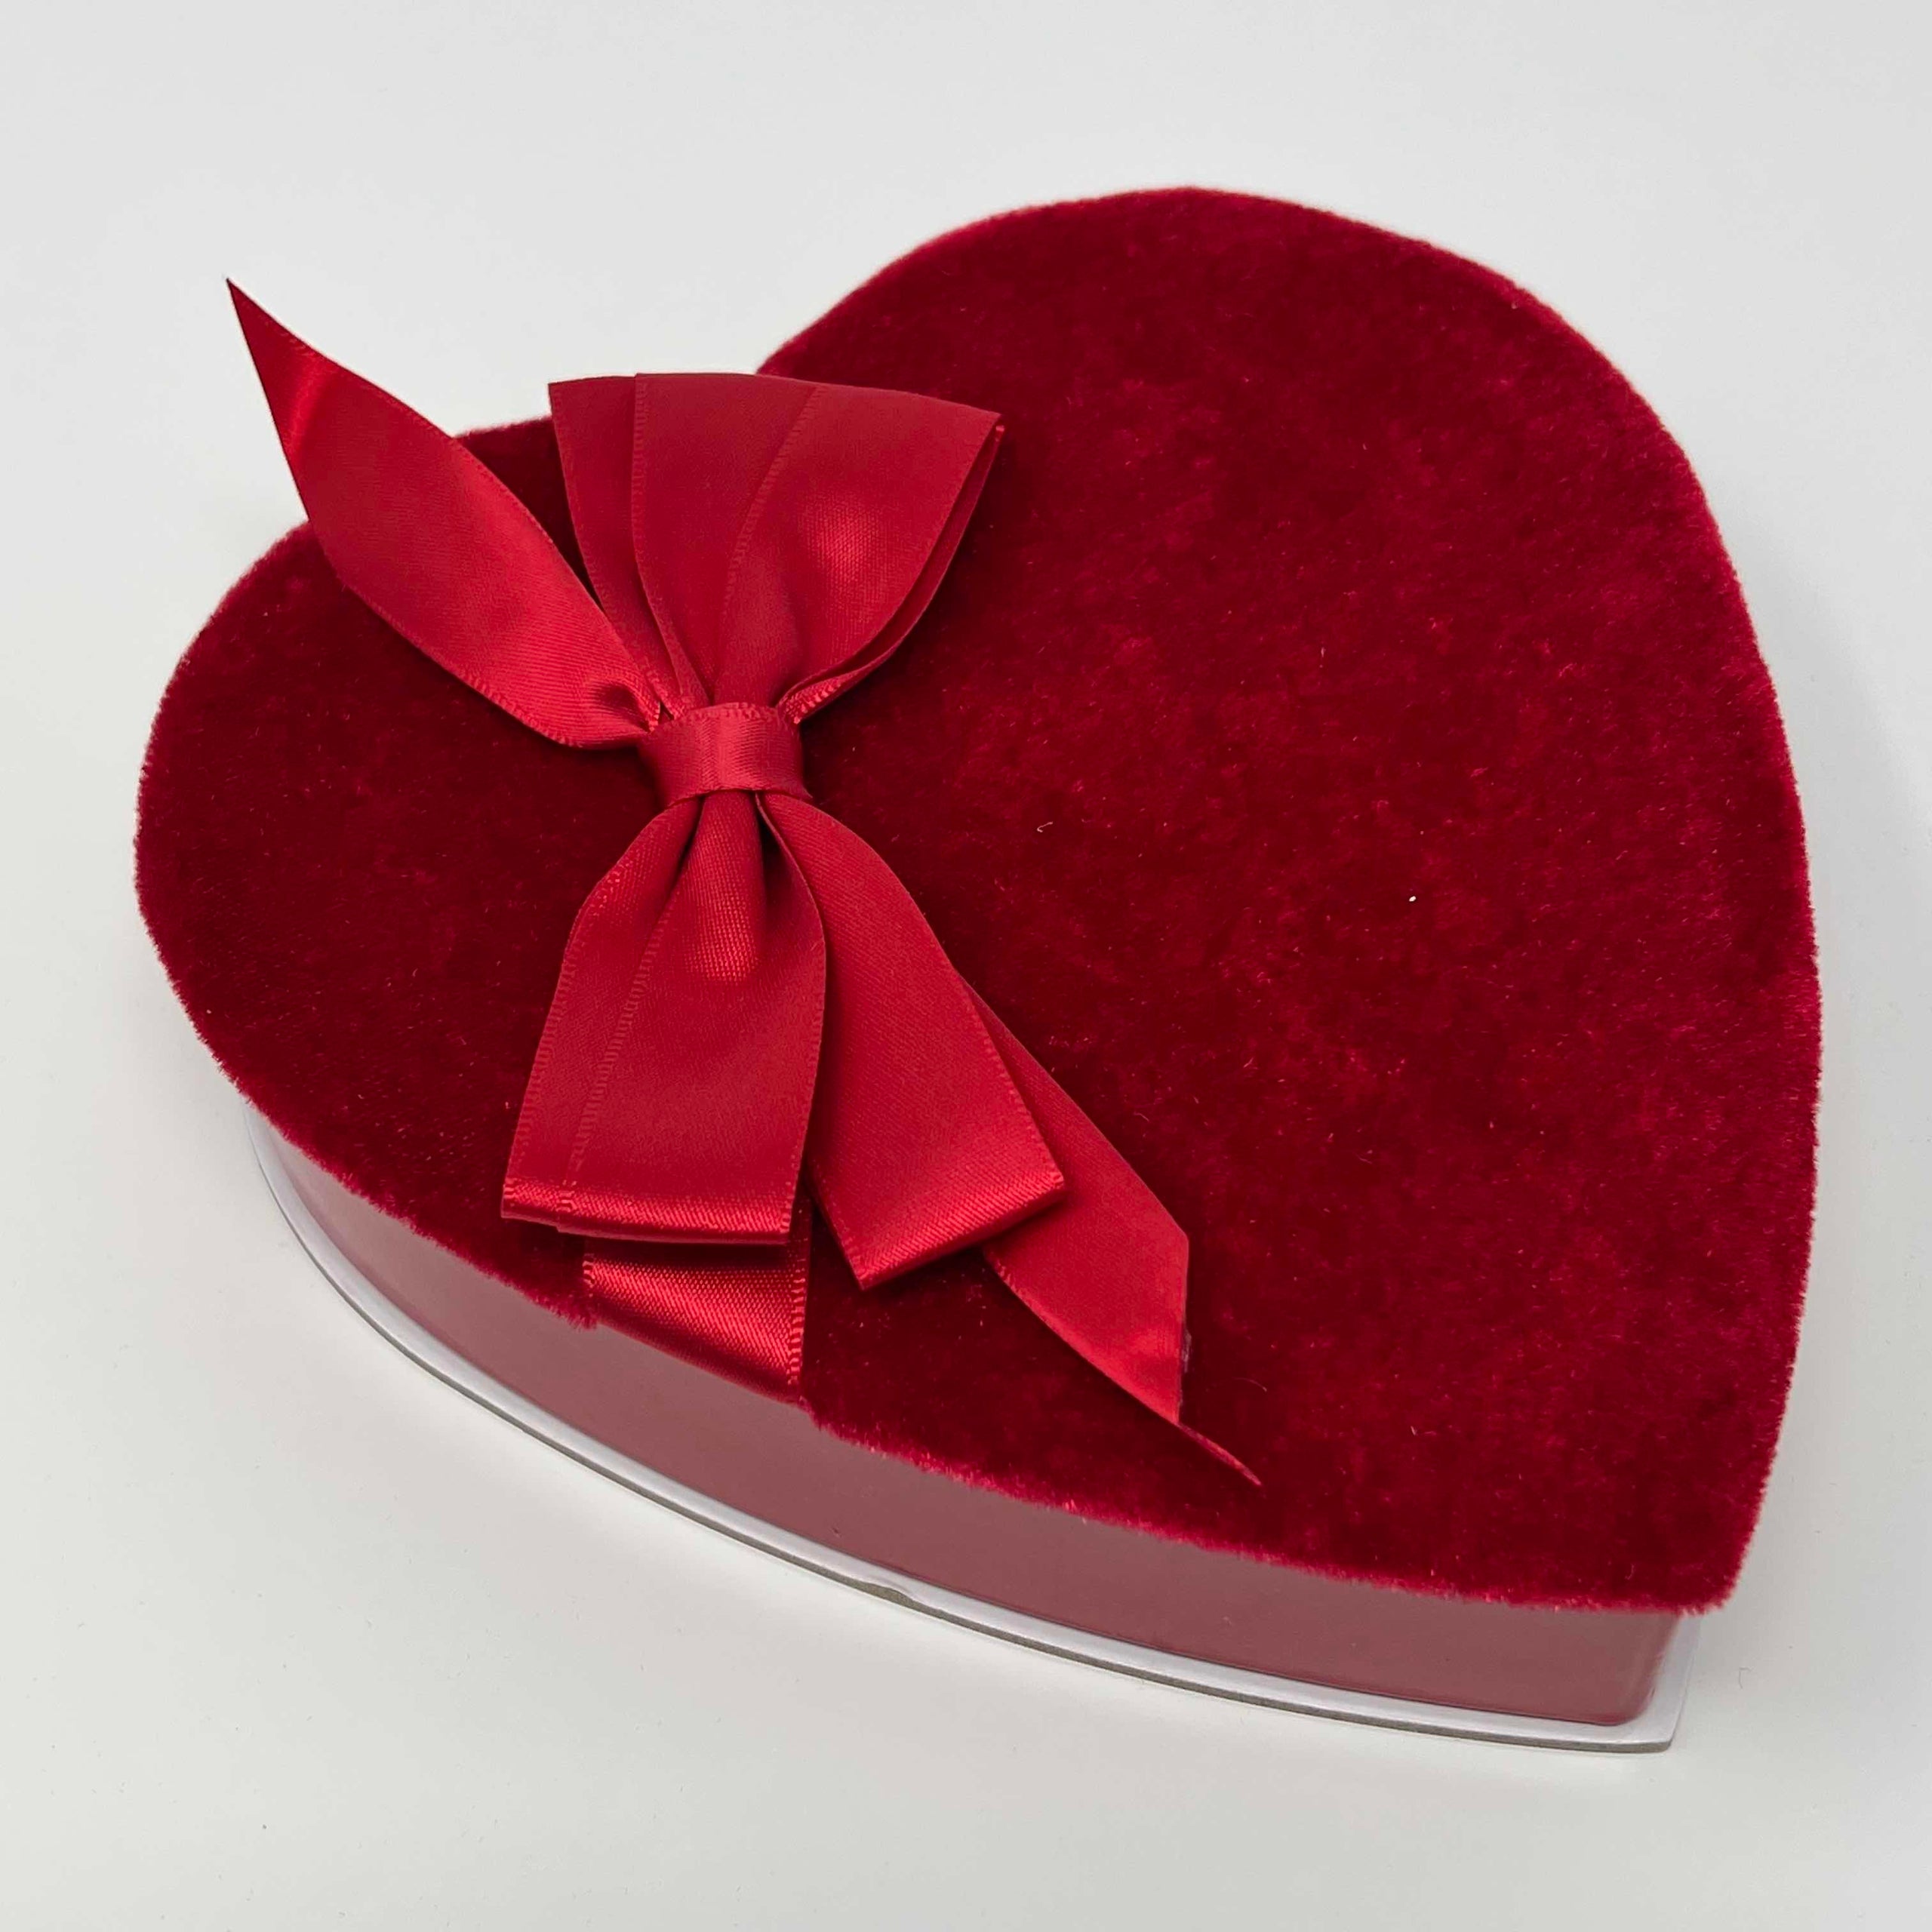 Red Velvet Heart Box (2lb)